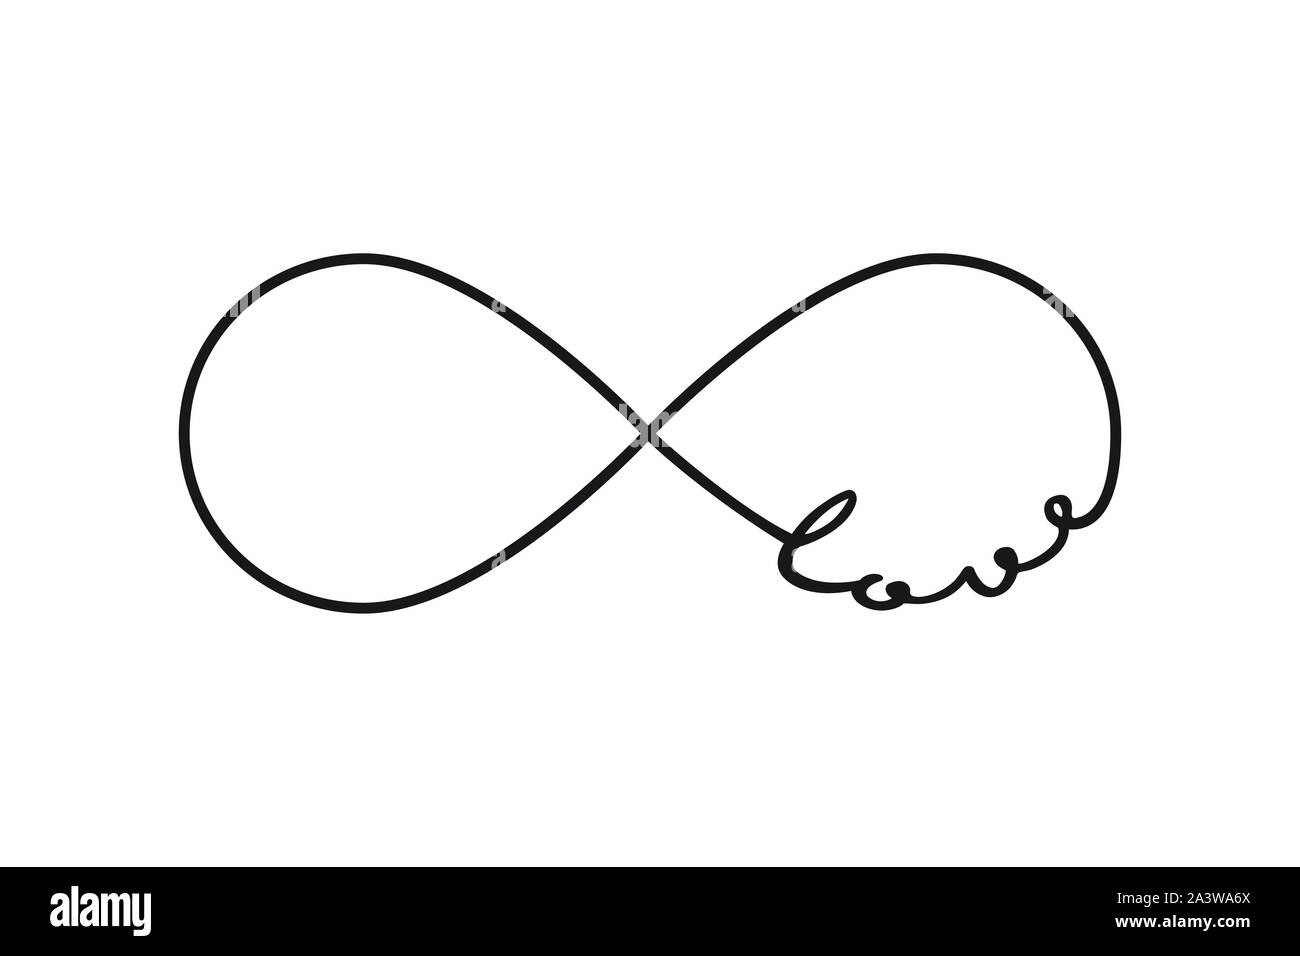 Liebe - infinity Symbol. Wiederholung und uneingeschränkte Zyklizität Zeichen Stock Vektor